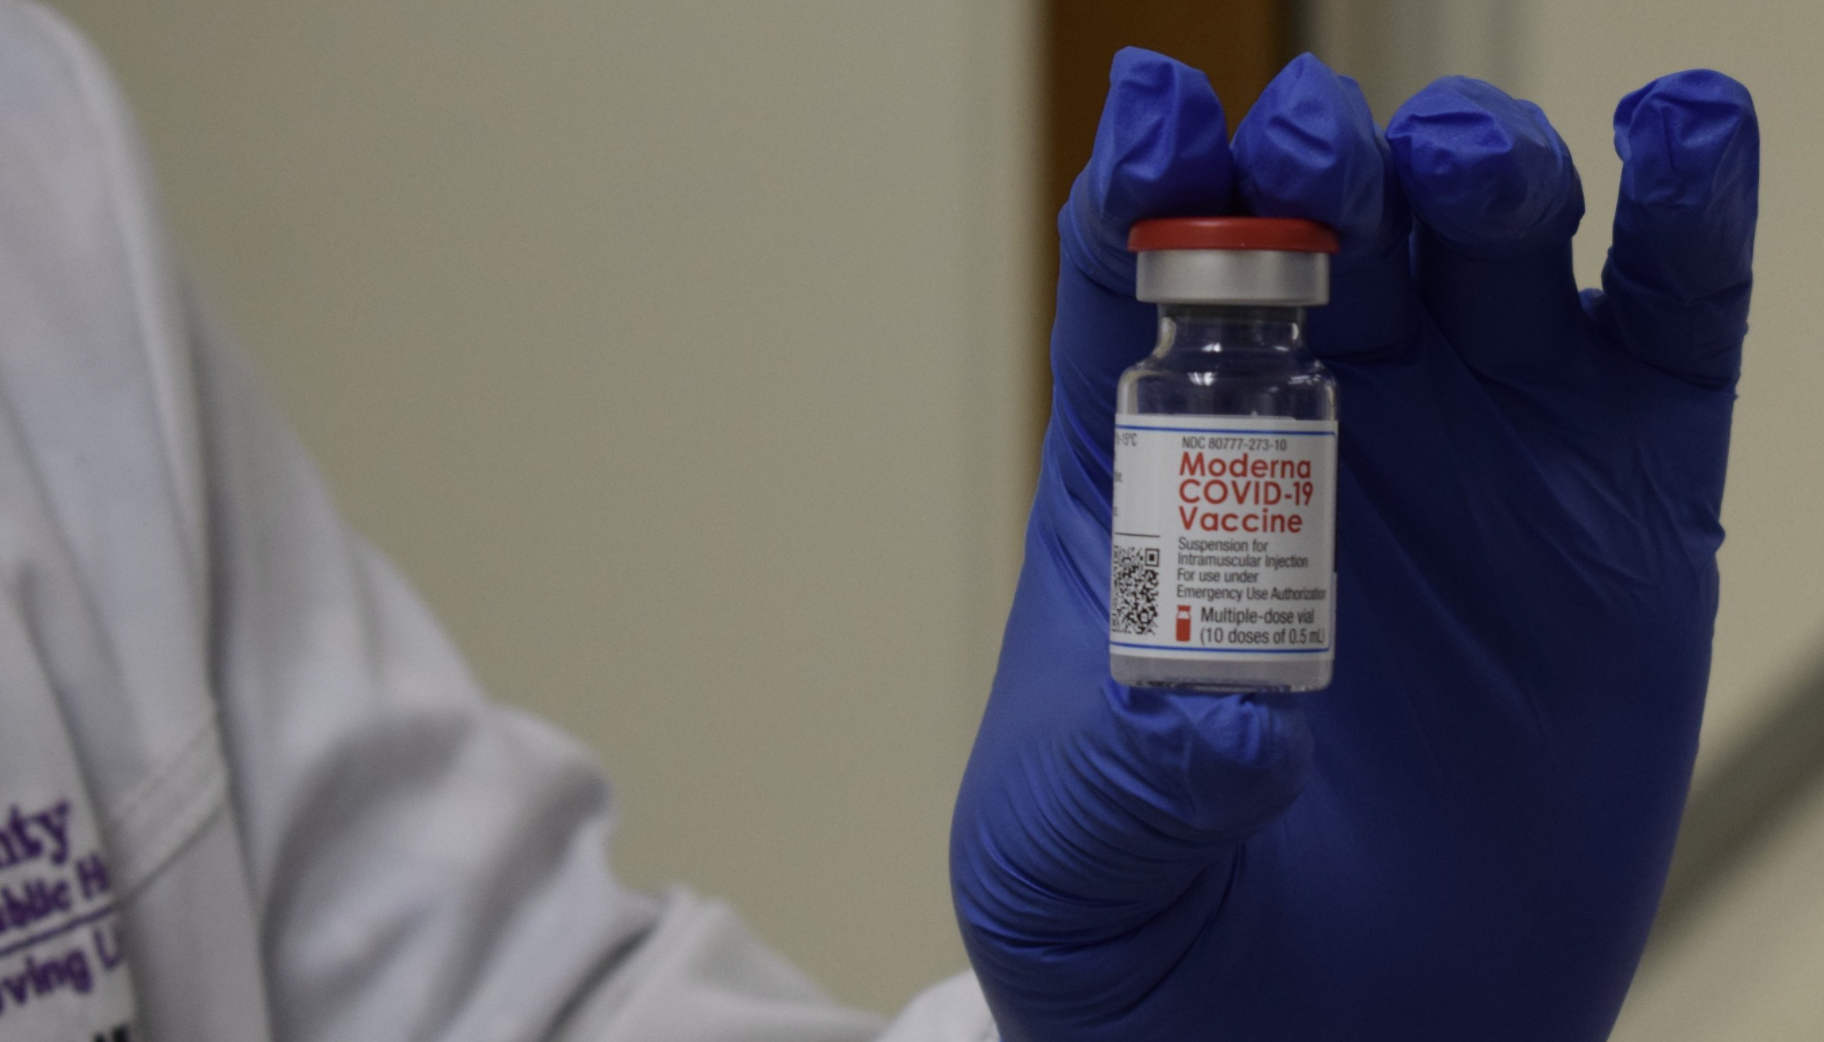 Por qué mezclar y combinar las vacunas covid-19 podría resolver muchos problemas